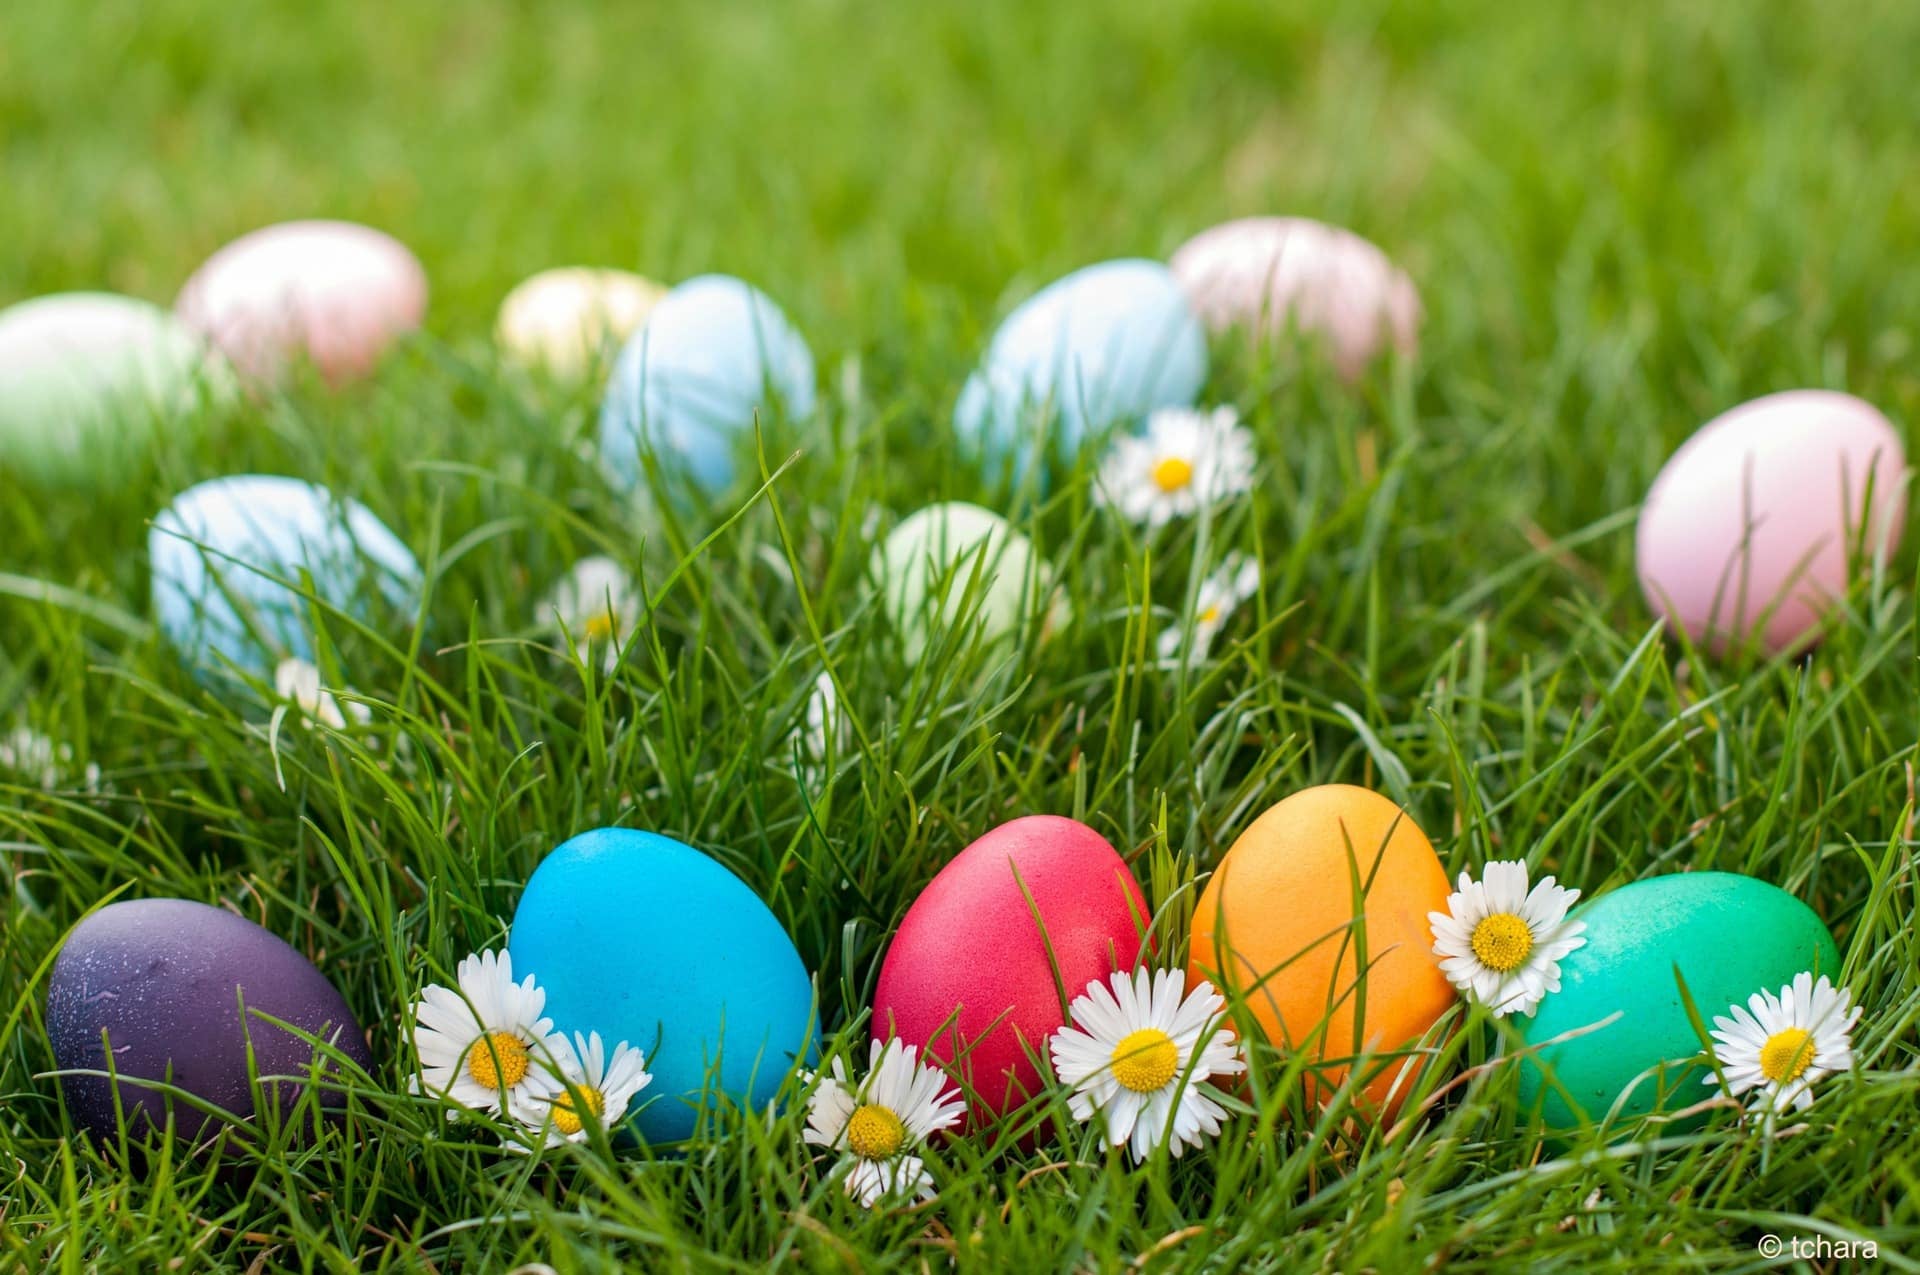 Cheaha Easter Egg Hunt